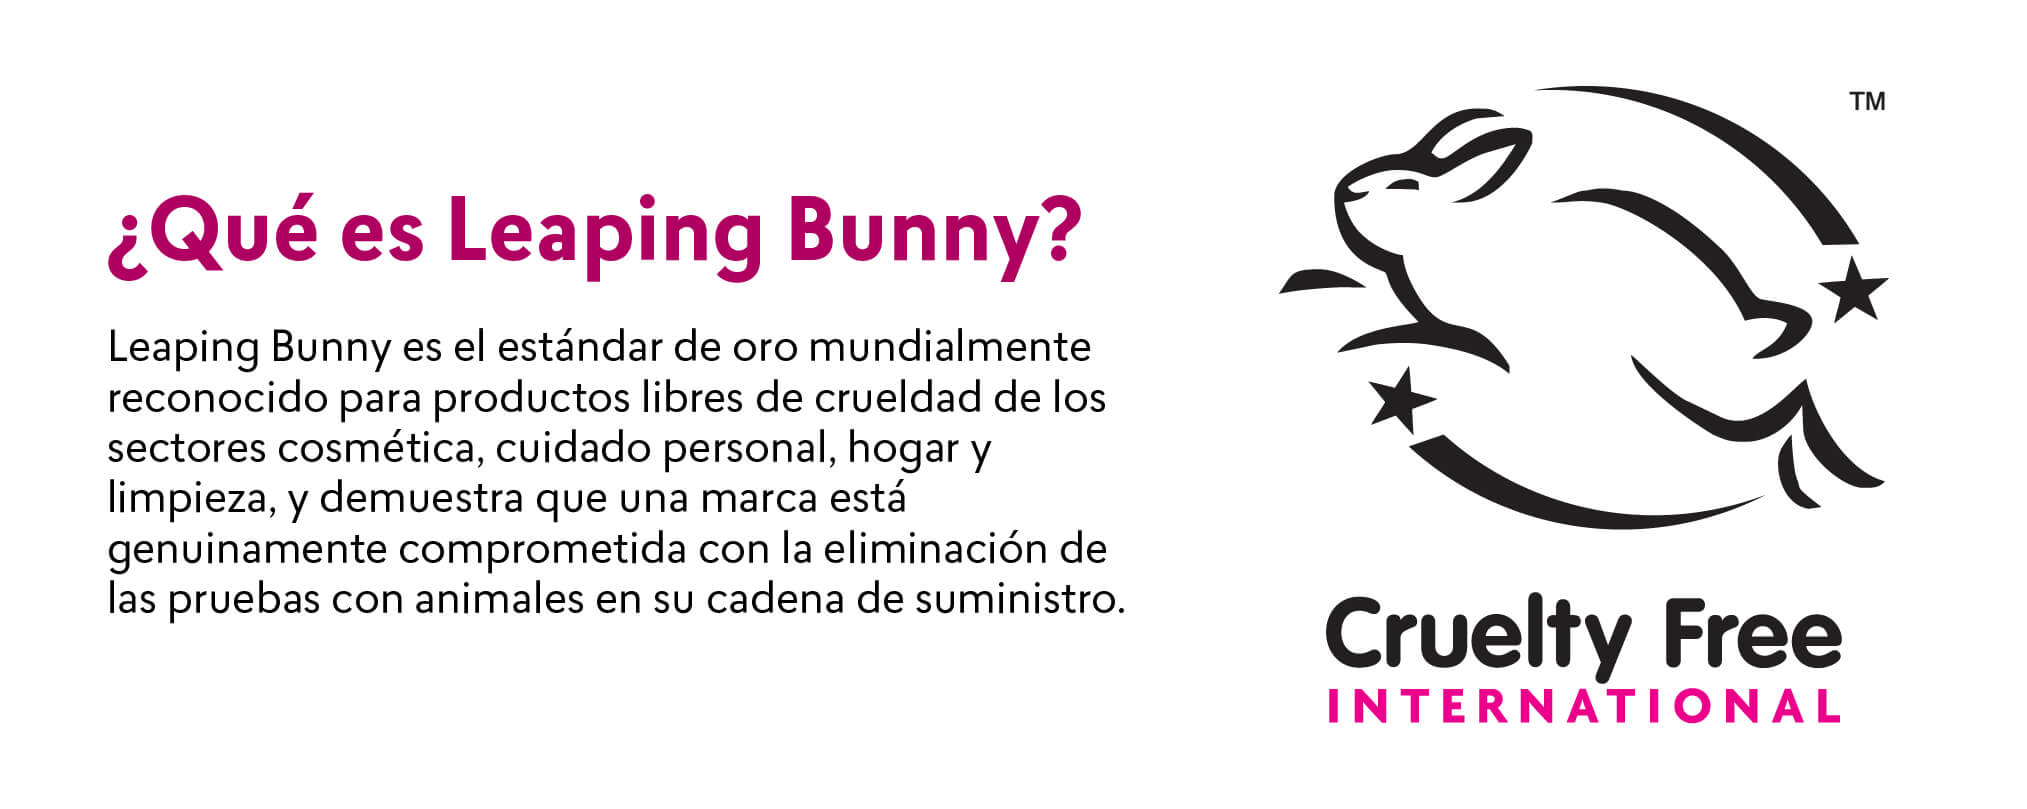 ¿Qué es Leaping Bunny?